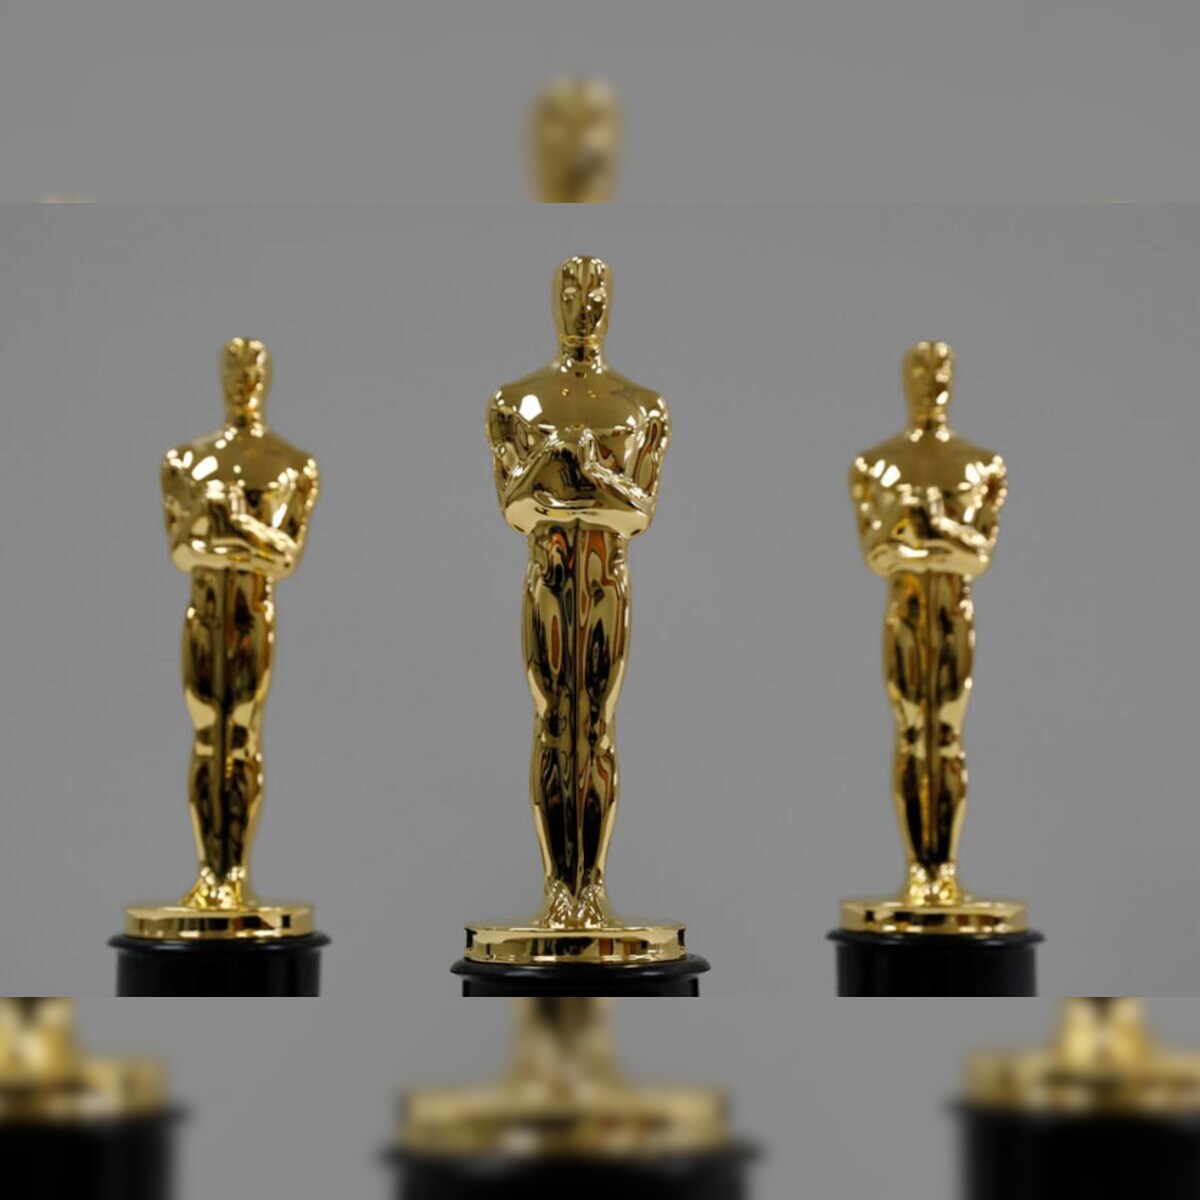 Oscar awards 2021